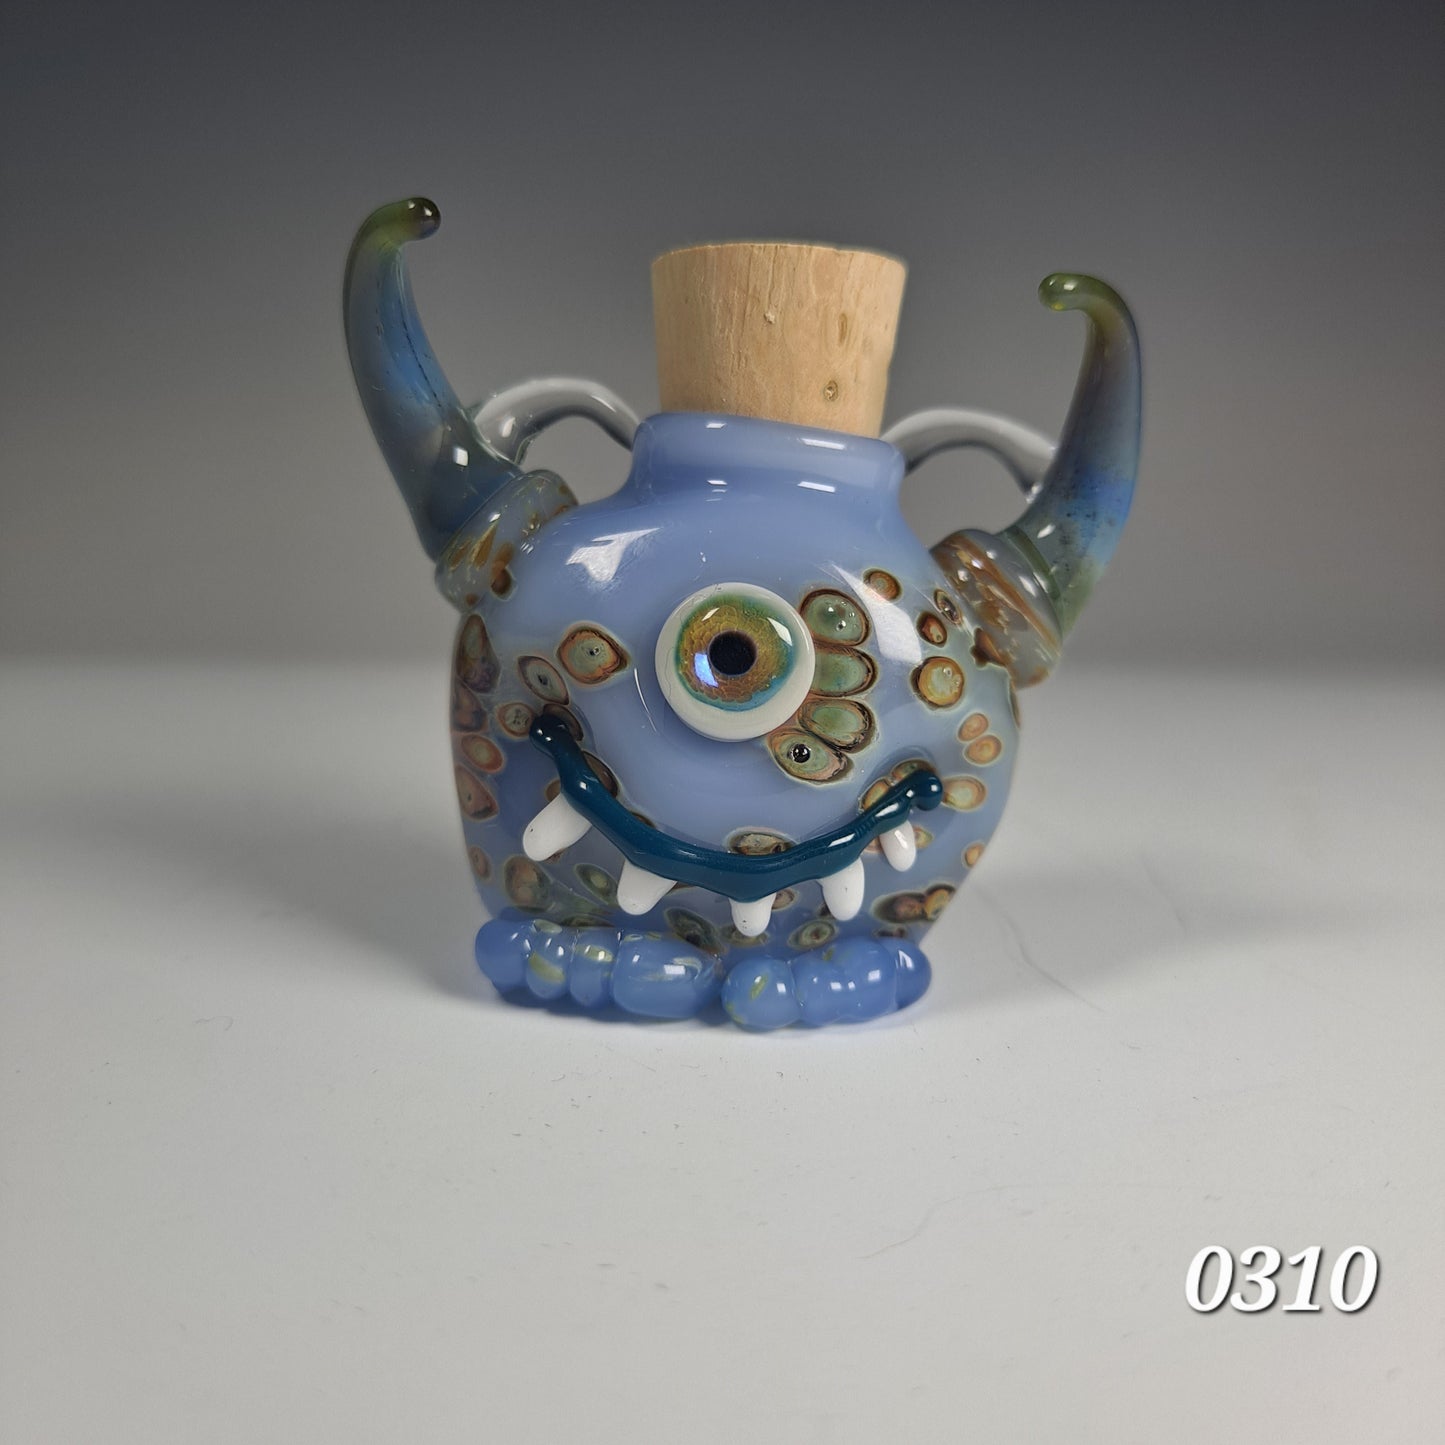 Eyeball Monster Potion Bottle Pendant Collection